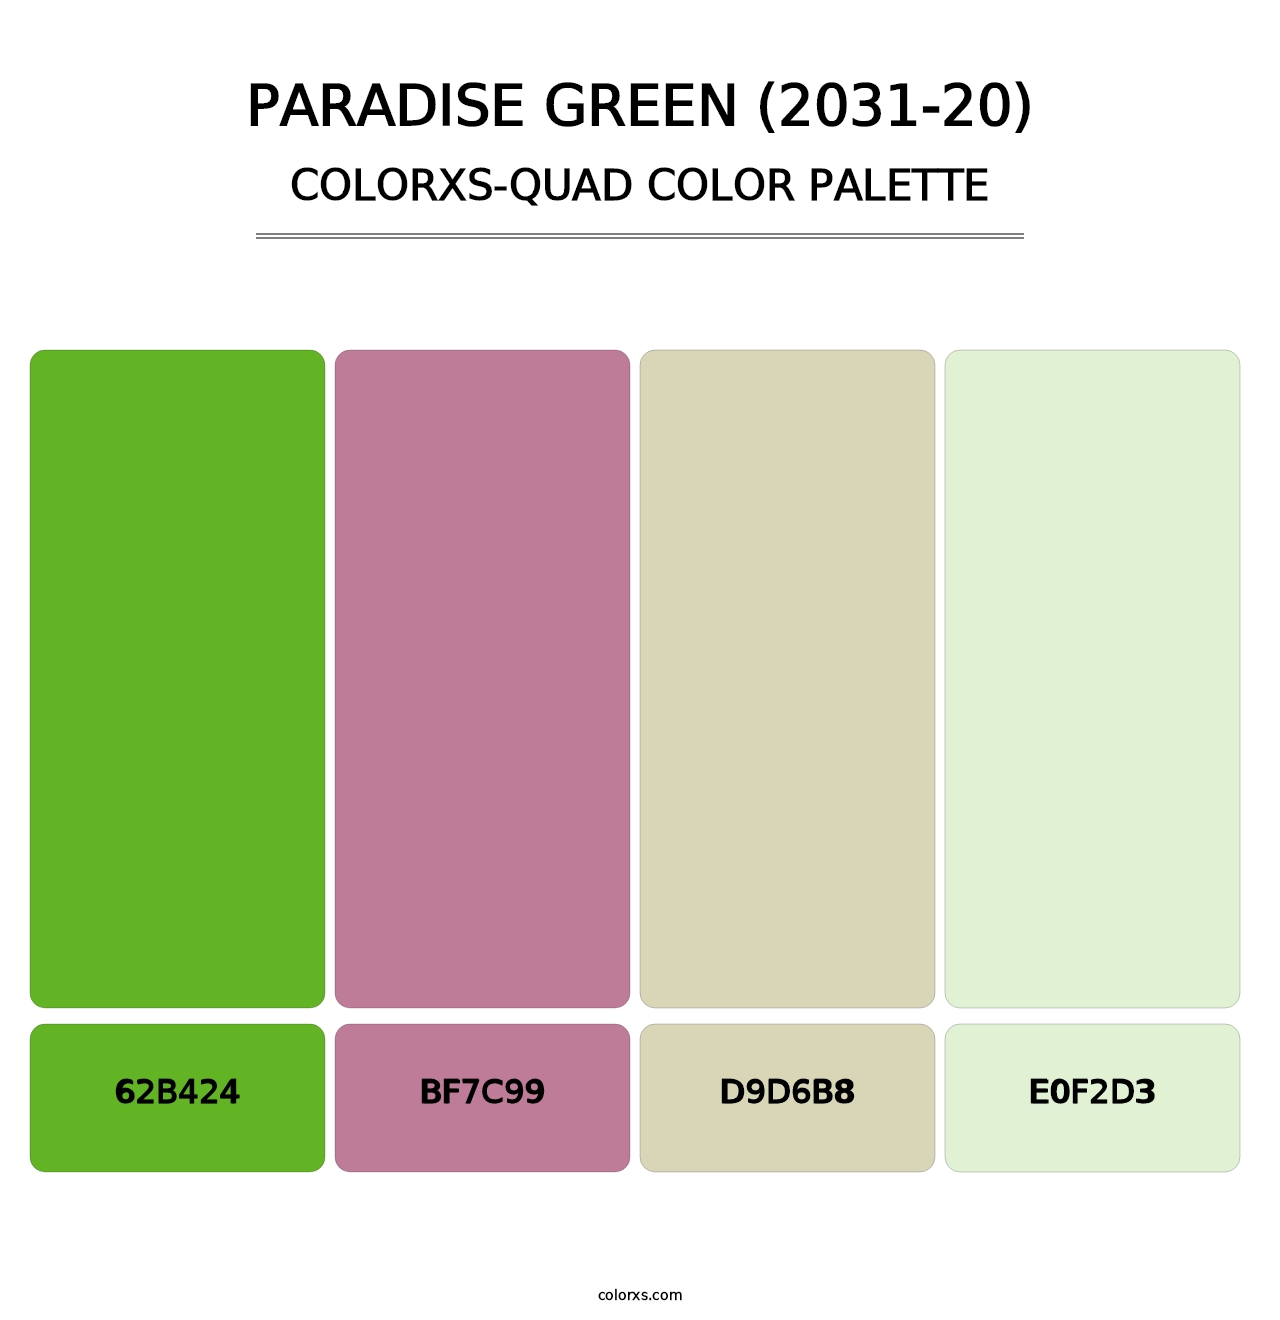 Paradise Green (2031-20) - Colorxs Quad Palette